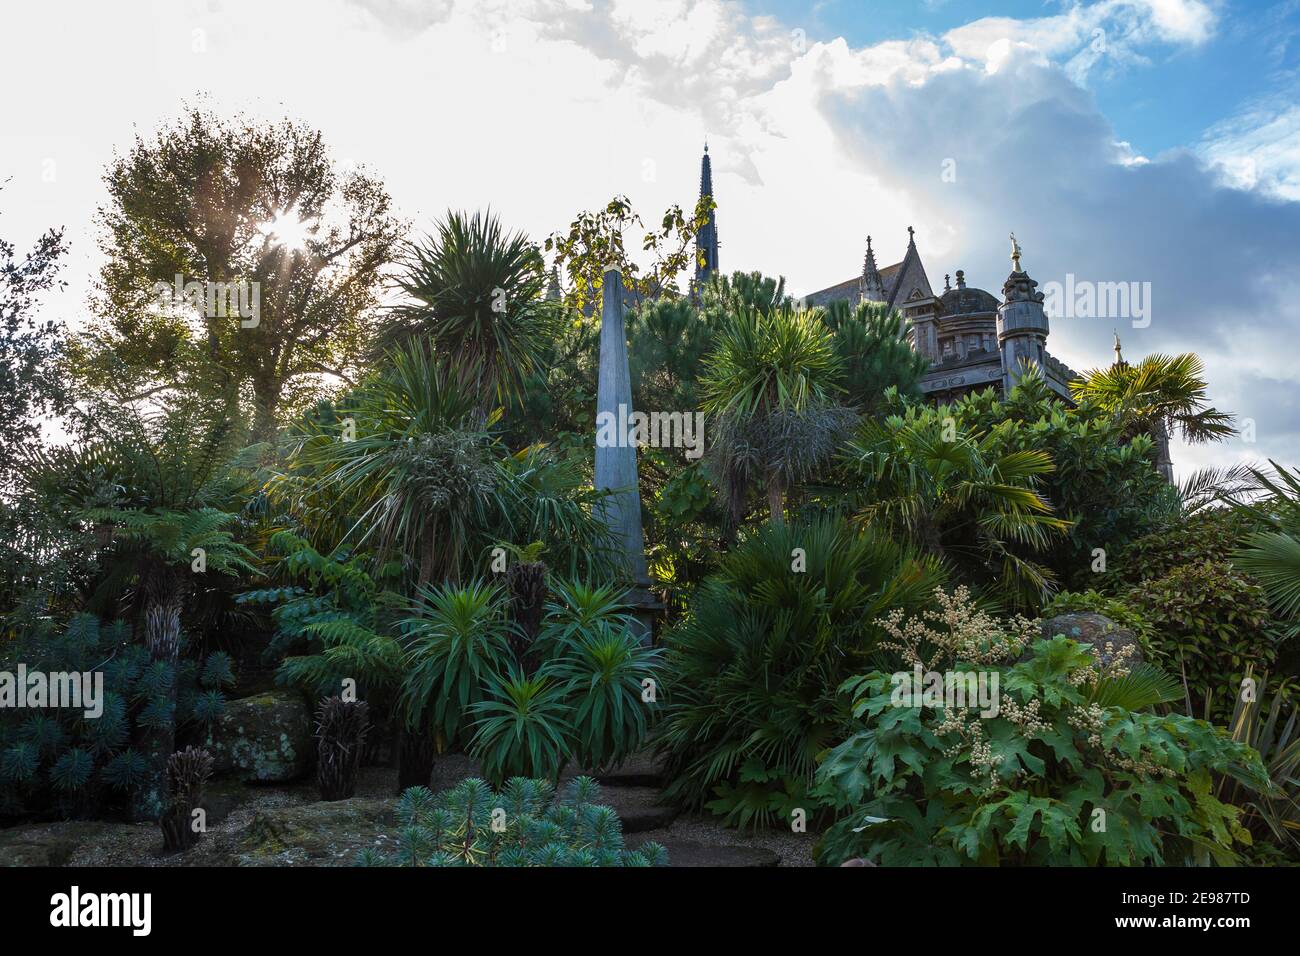 Des plantes tropicales exotiques obscurcissent en partie le palais Oberon, une structure de fantaisie basée sur le design d’Inigo Jones : Arundel Castle Garden, West Sussex, Angleterre Banque D'Images